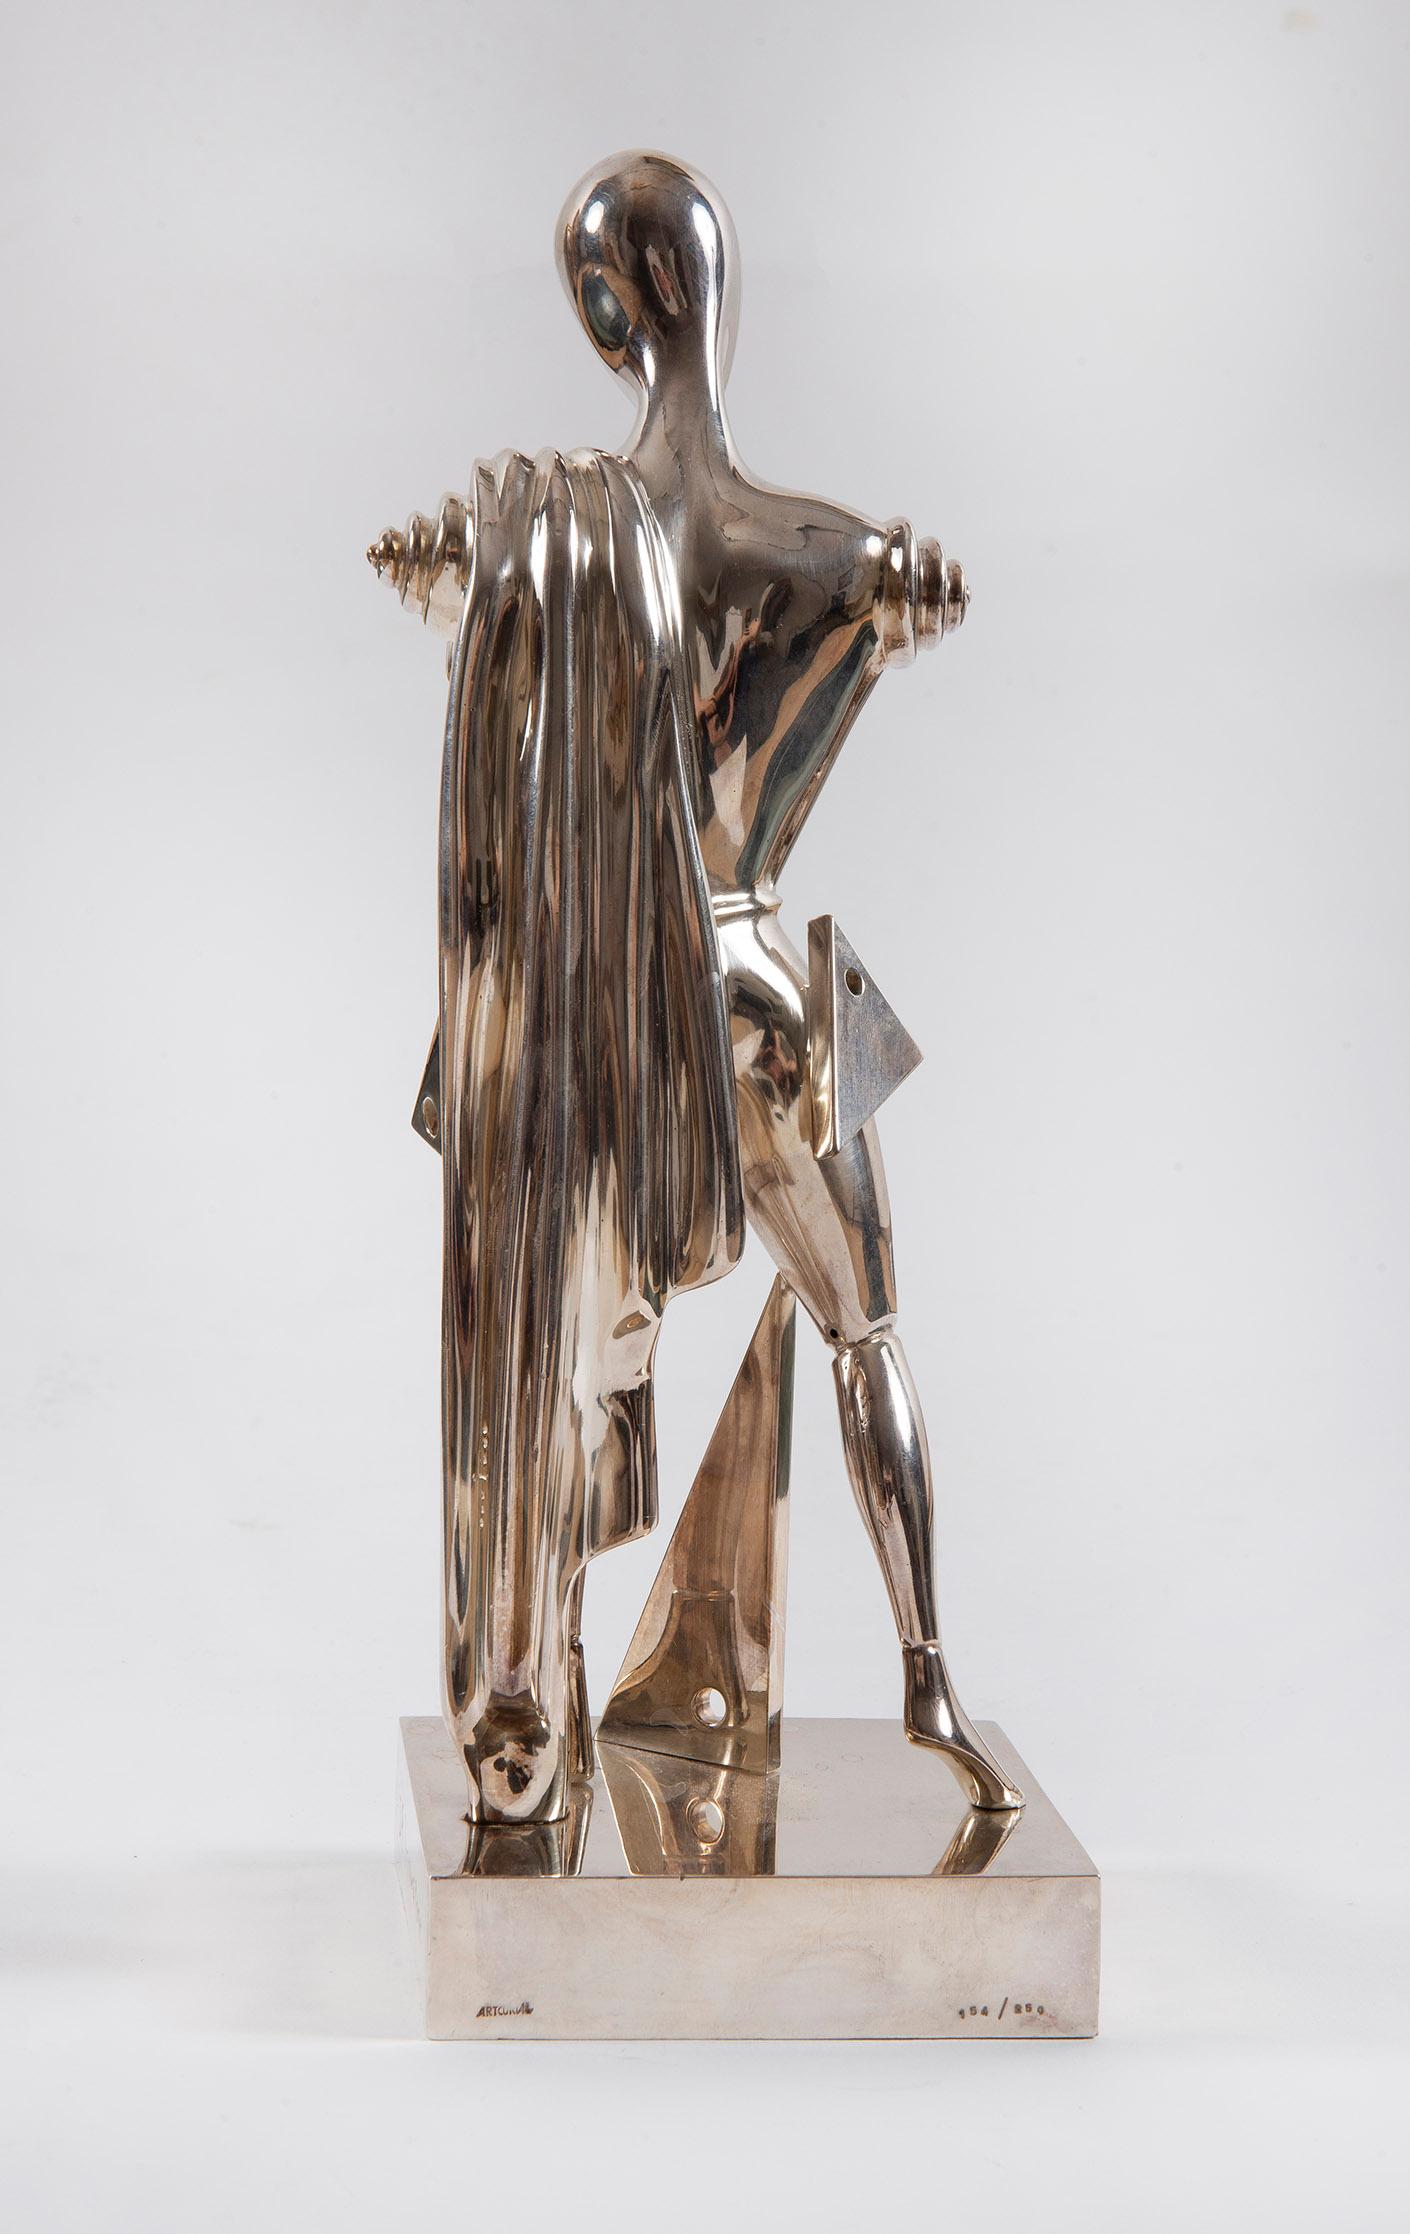 Il Trovatore, Chirico, Multiples, 1970's, Bronze, Sculpture, Surrealiste - Post-War Art by Giorgio De Chirico